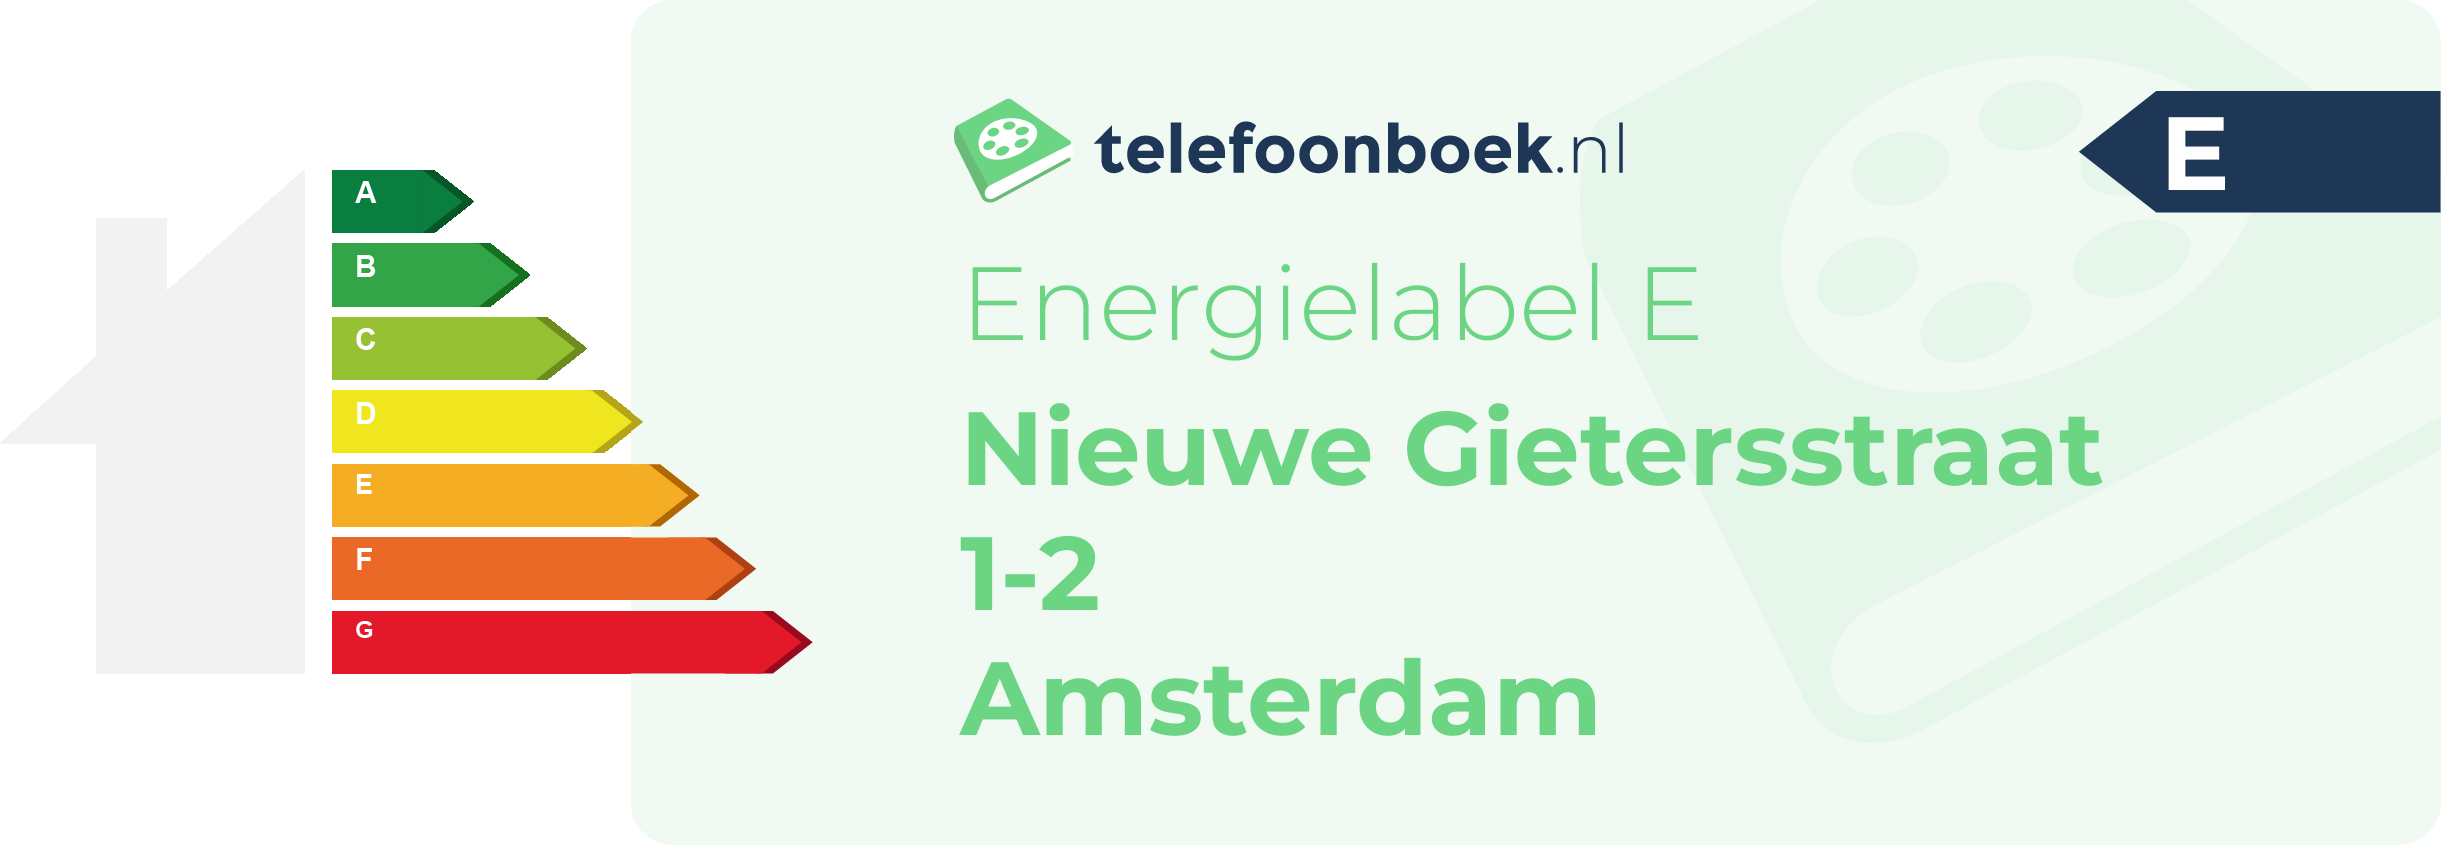 Energielabel Nieuwe Gietersstraat 1-2 Amsterdam